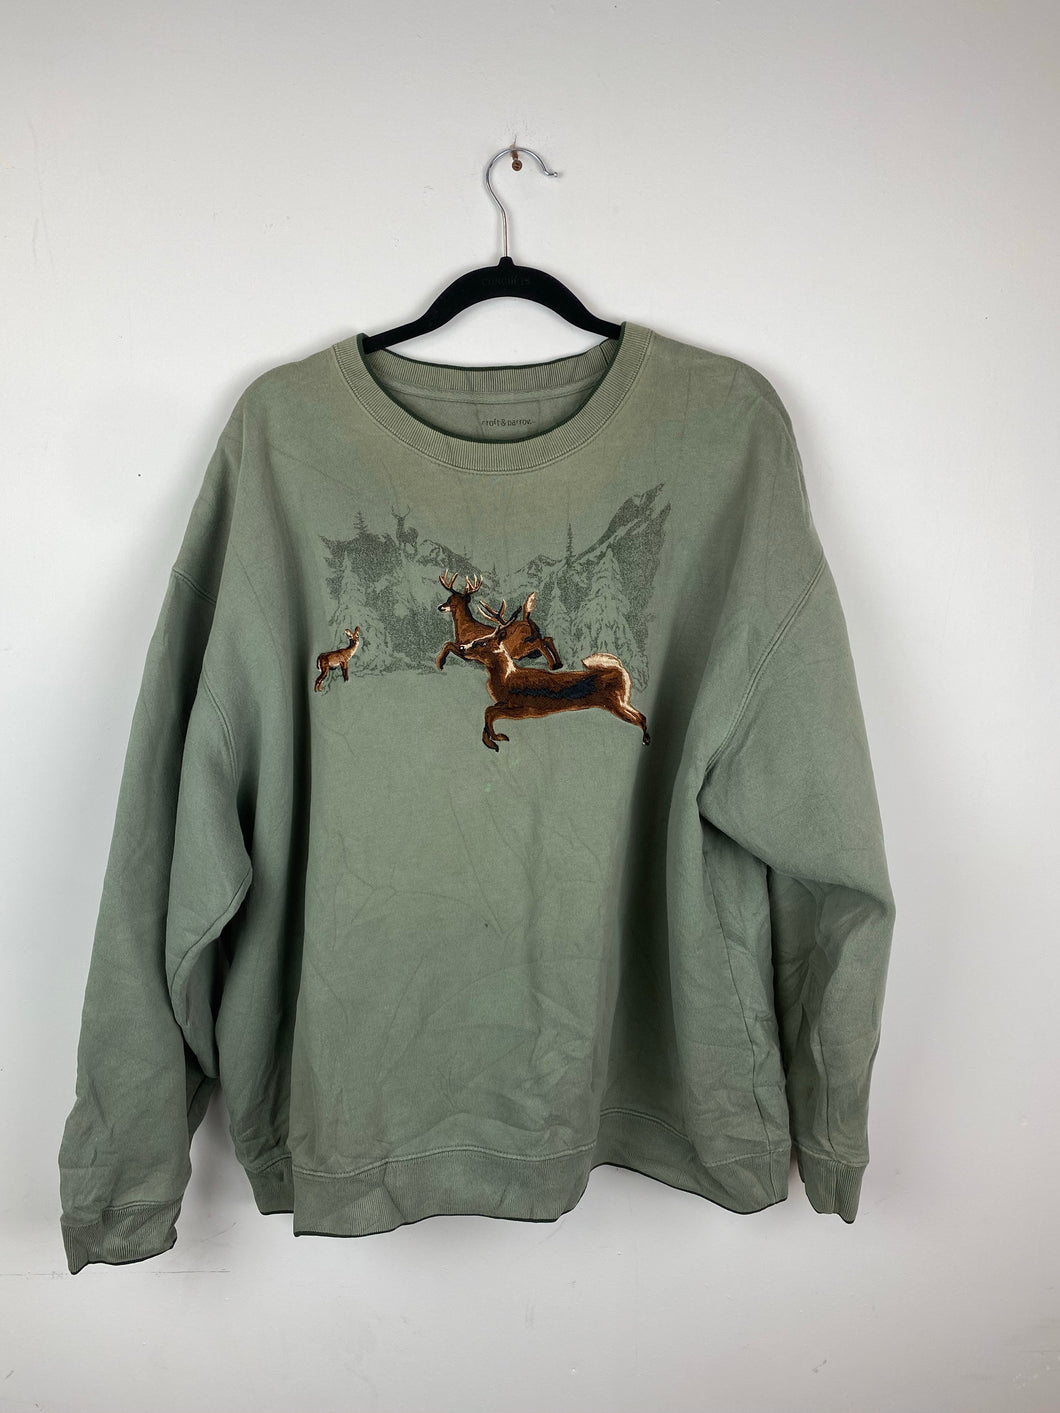 Vintage embroidered deer crewneck